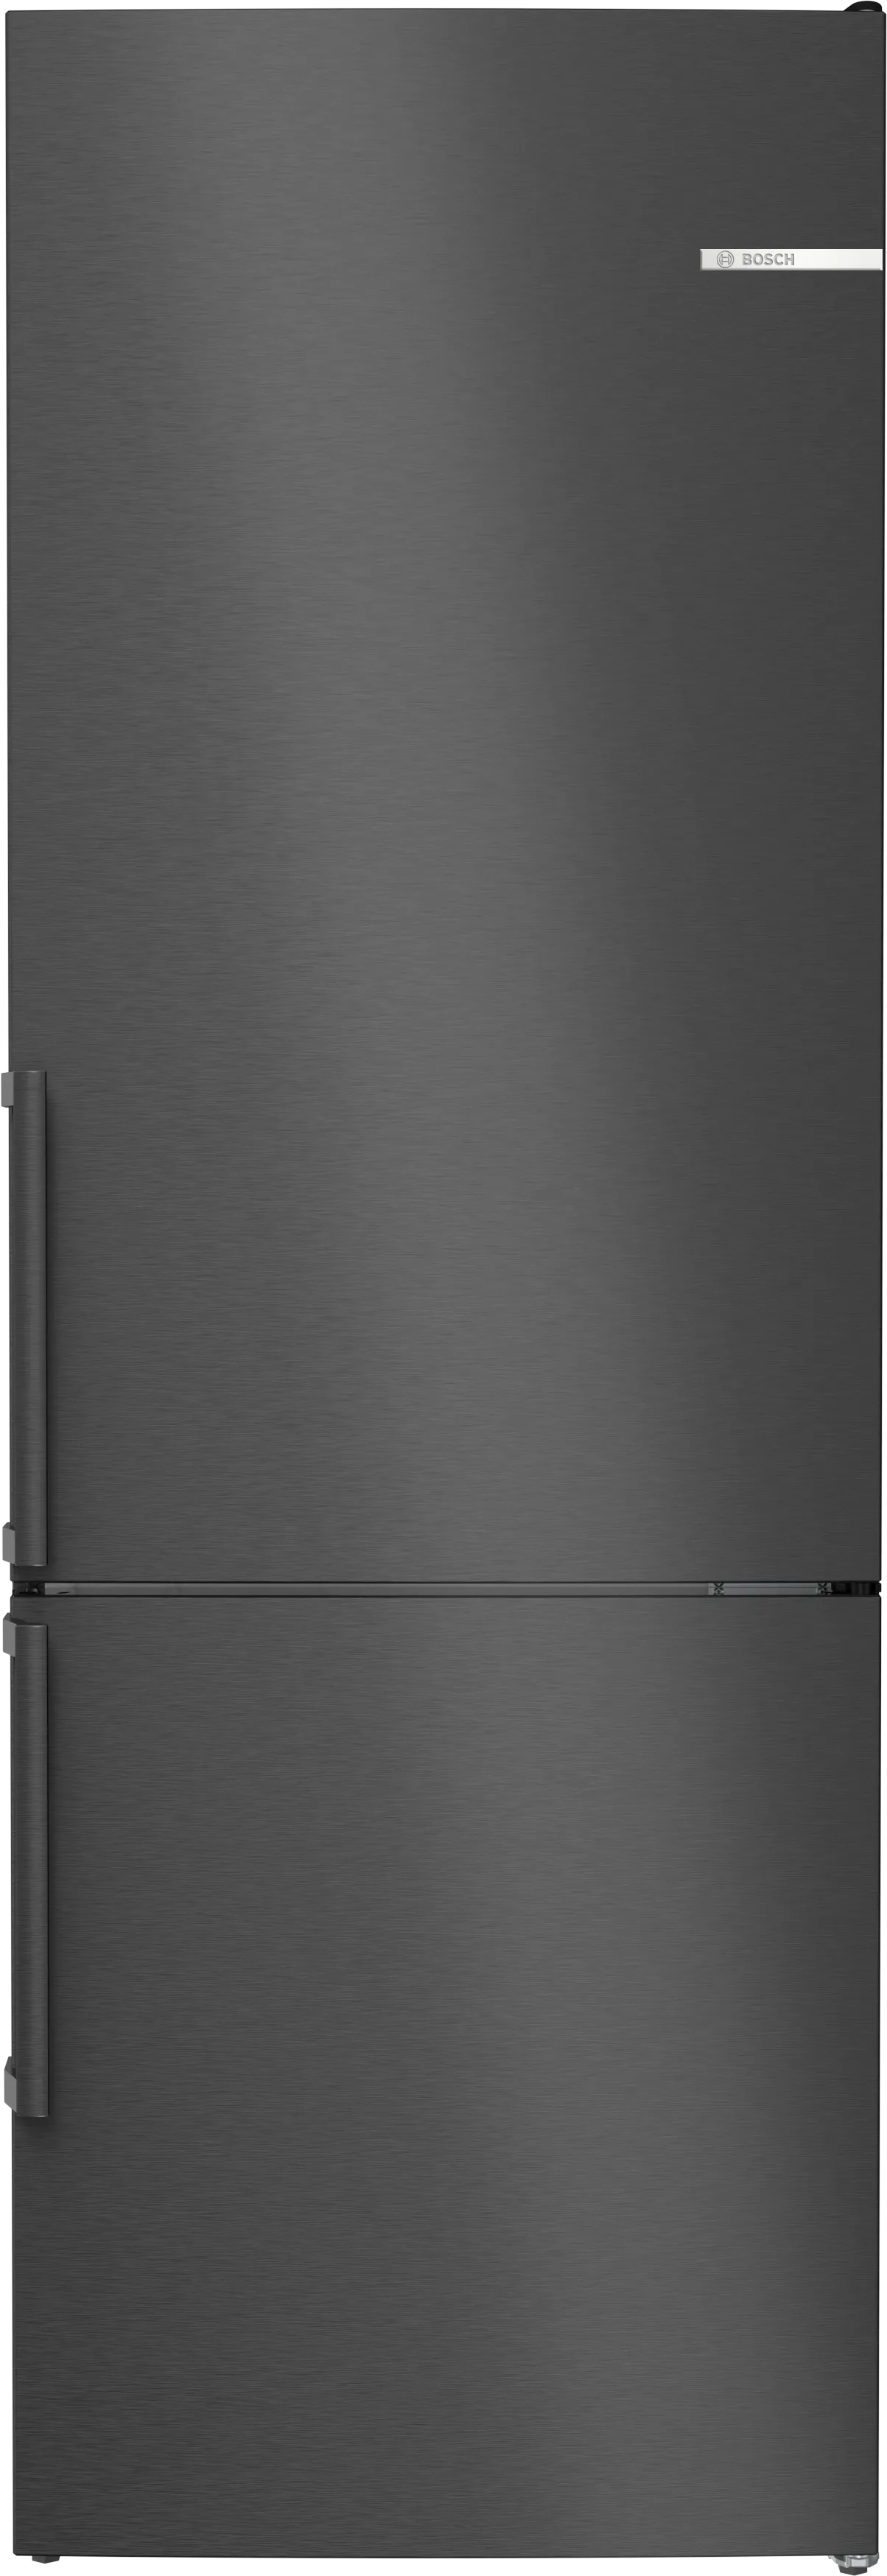 Serie 4 Freistehende Kühl-Gefrier-Kombination mit Gefrierbereich unten 203 x 70 cm Edelstahl schwarz 